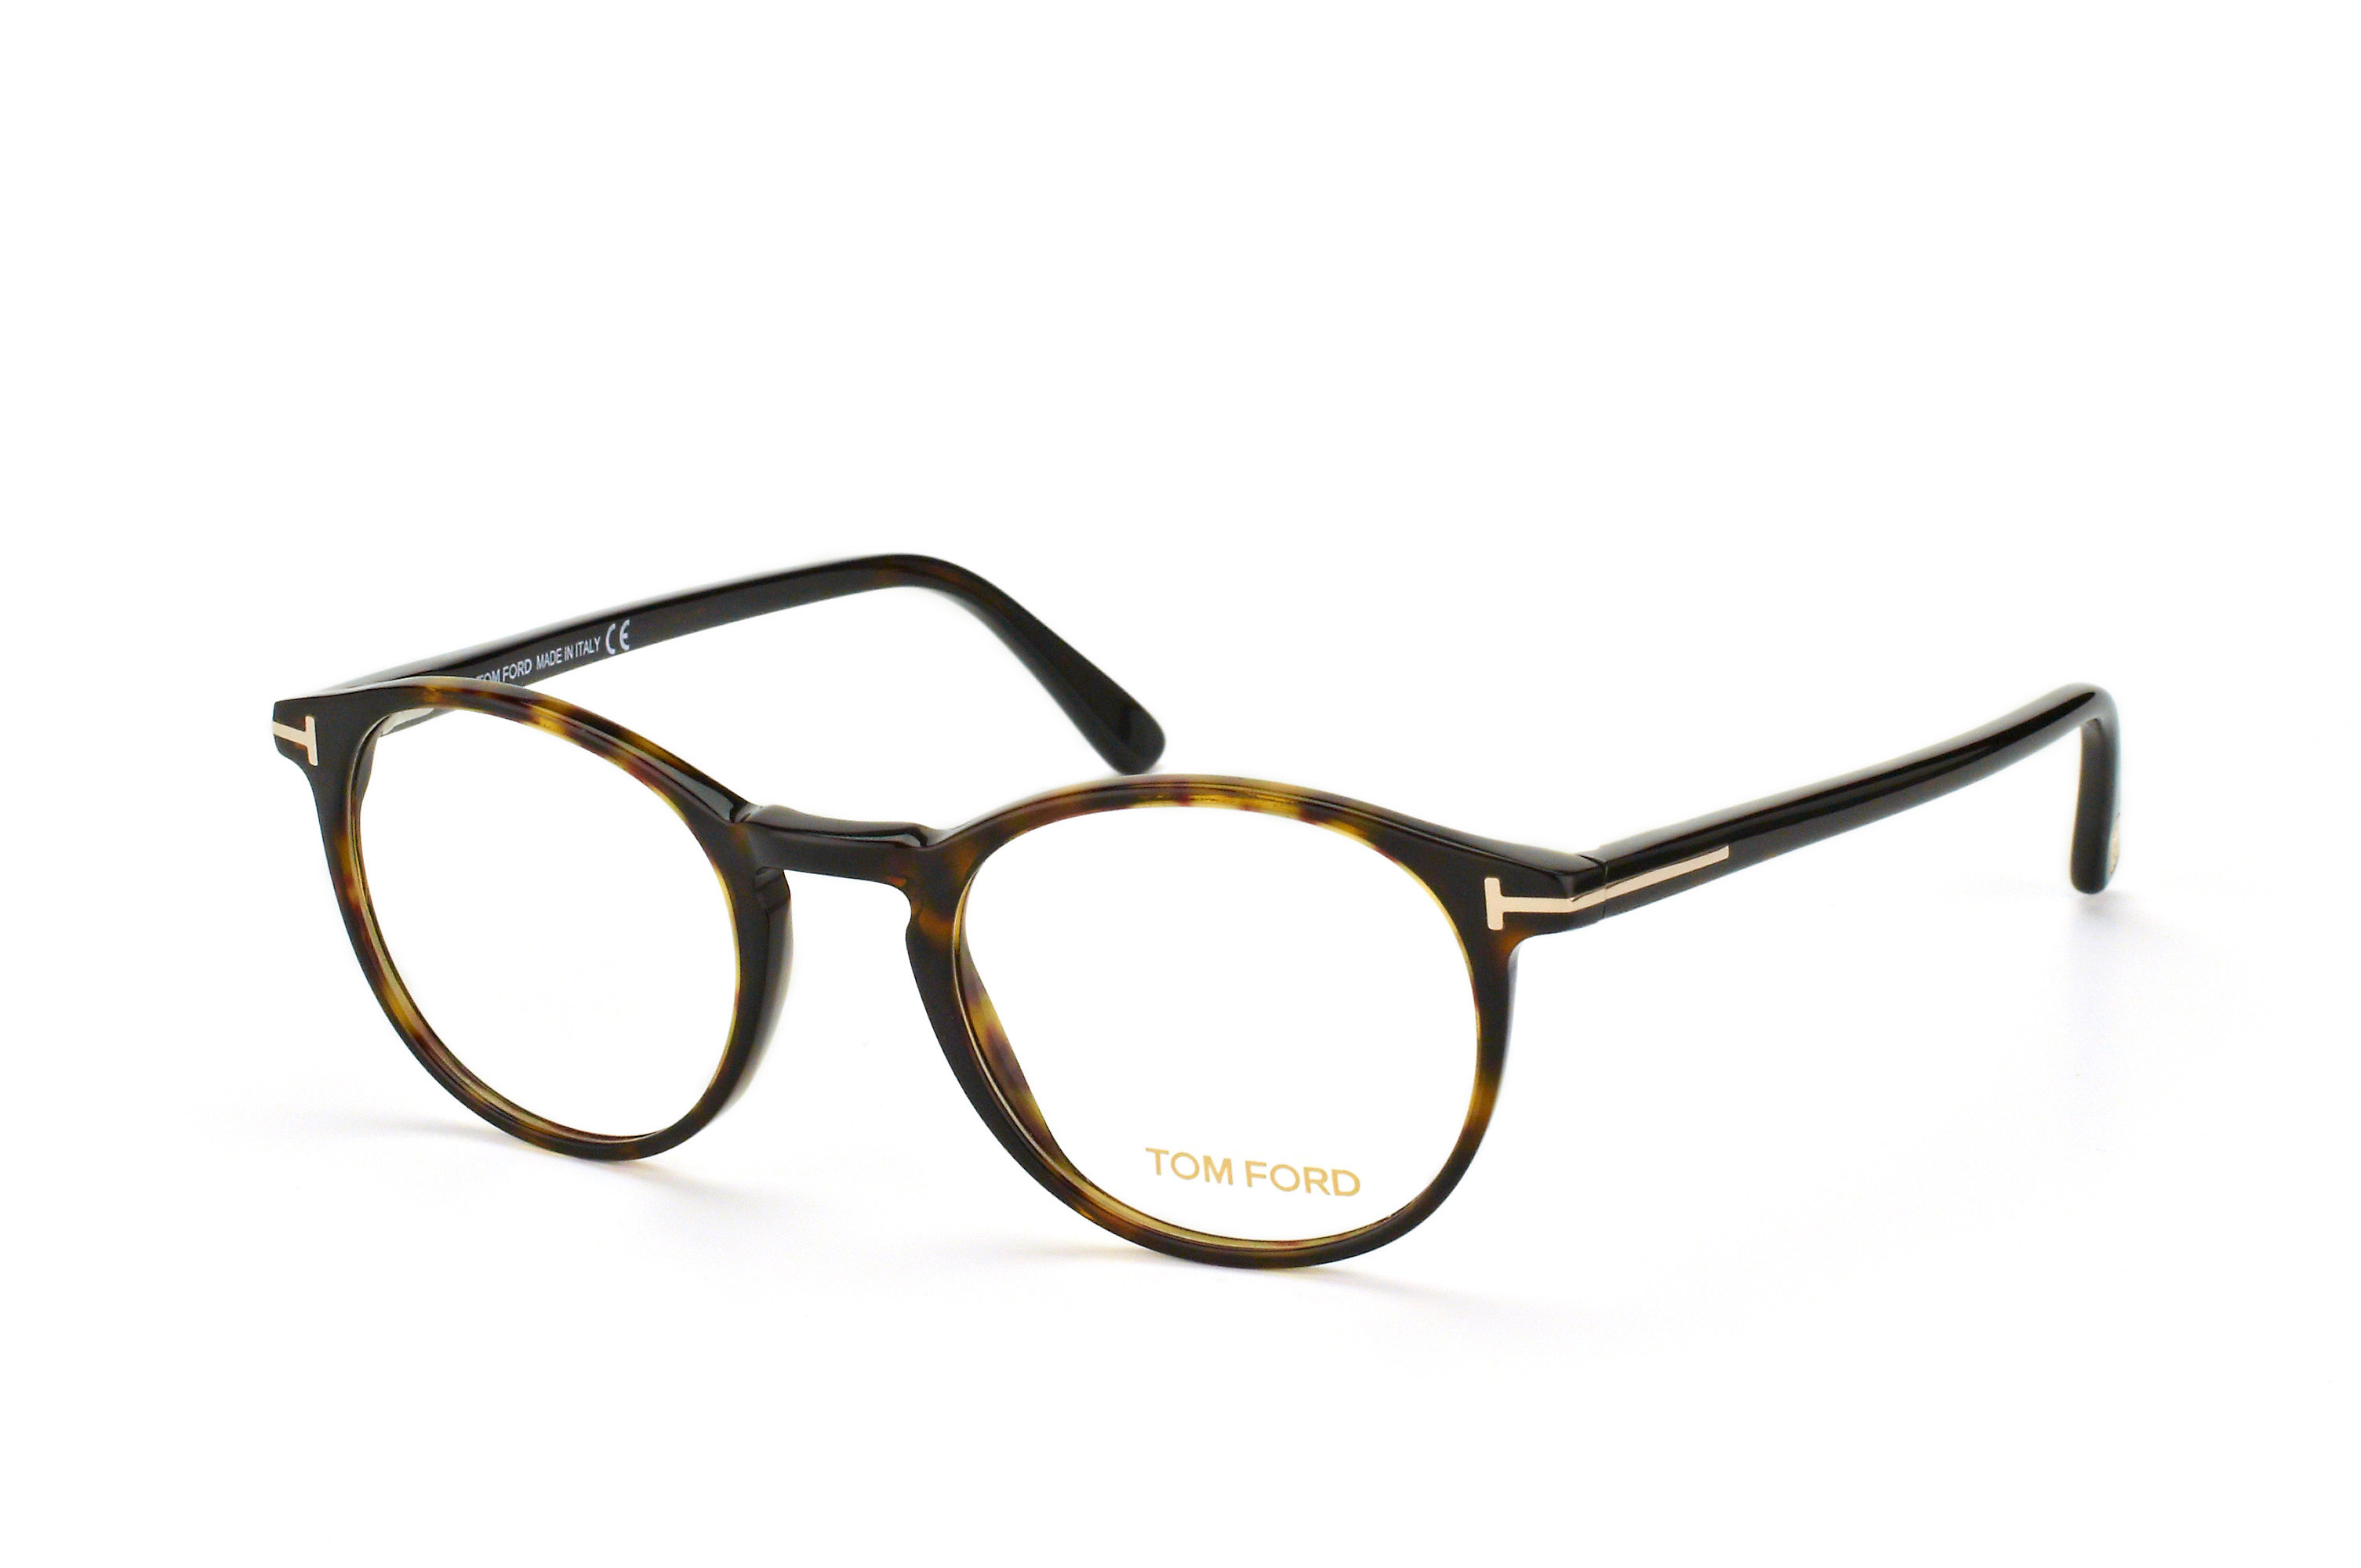 Buy Tom Ford 052 Glasses